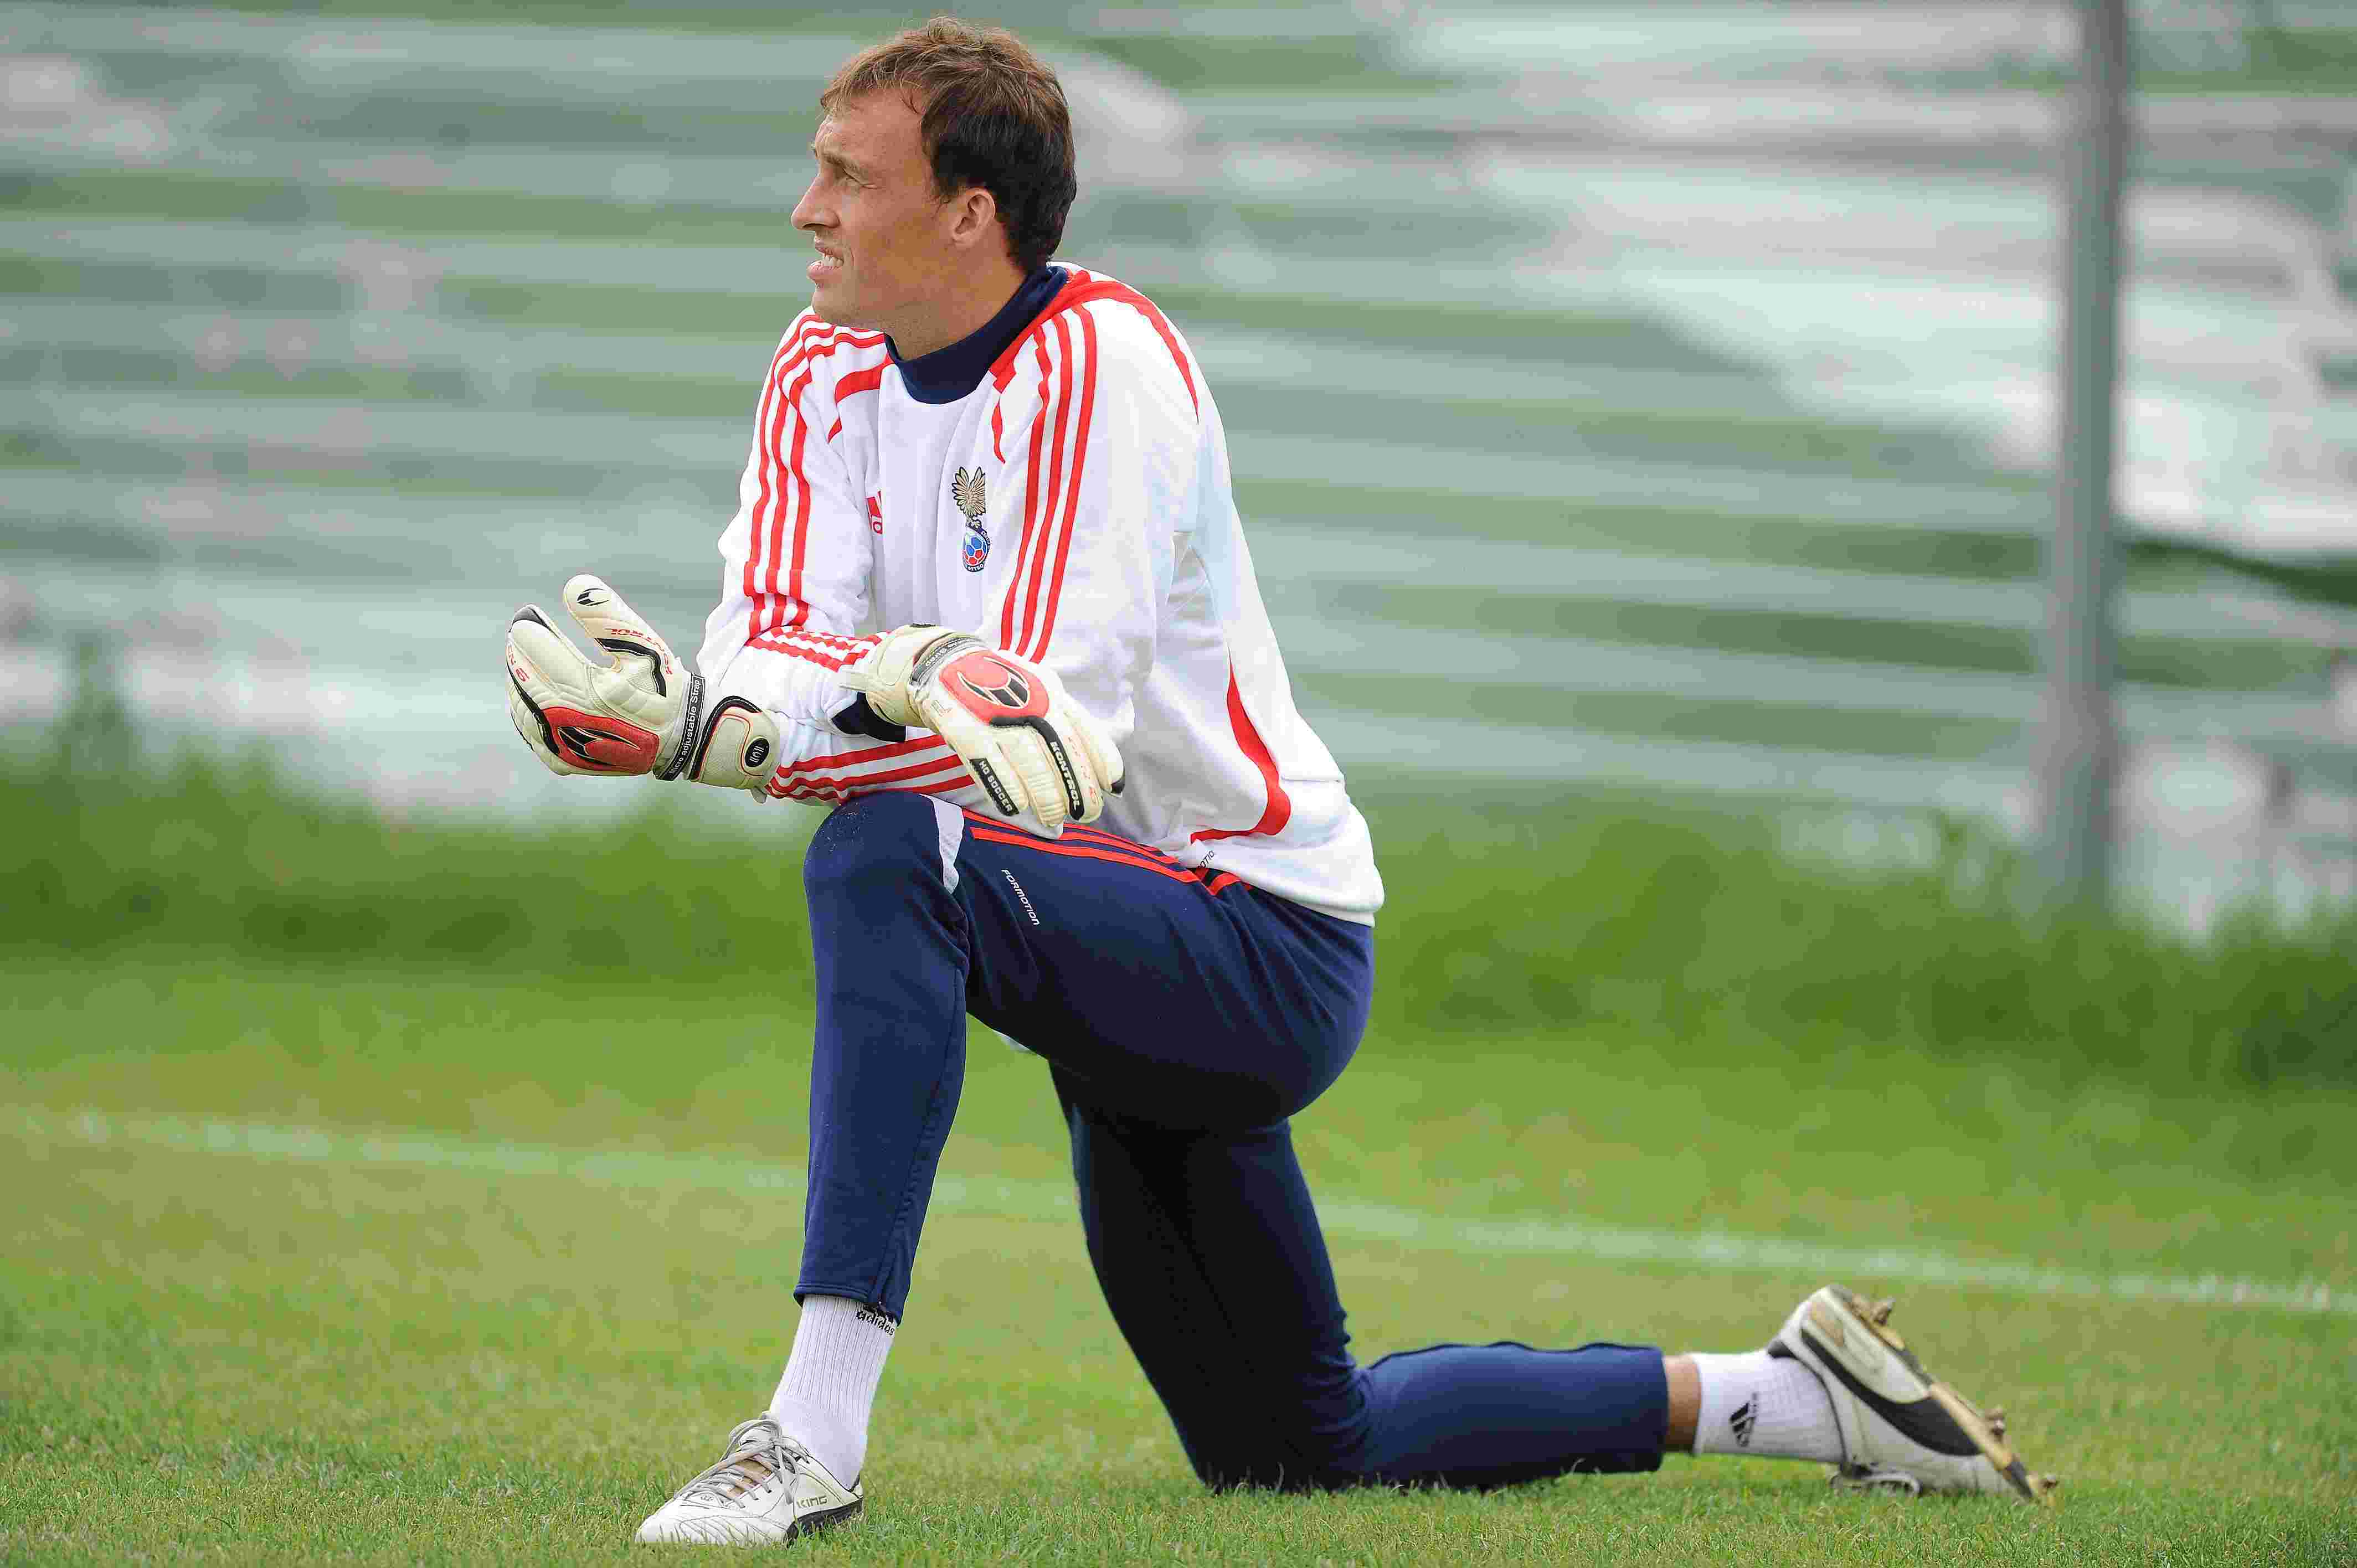 Alexander Filz Krasnodar goalkeeper in training wallpaper